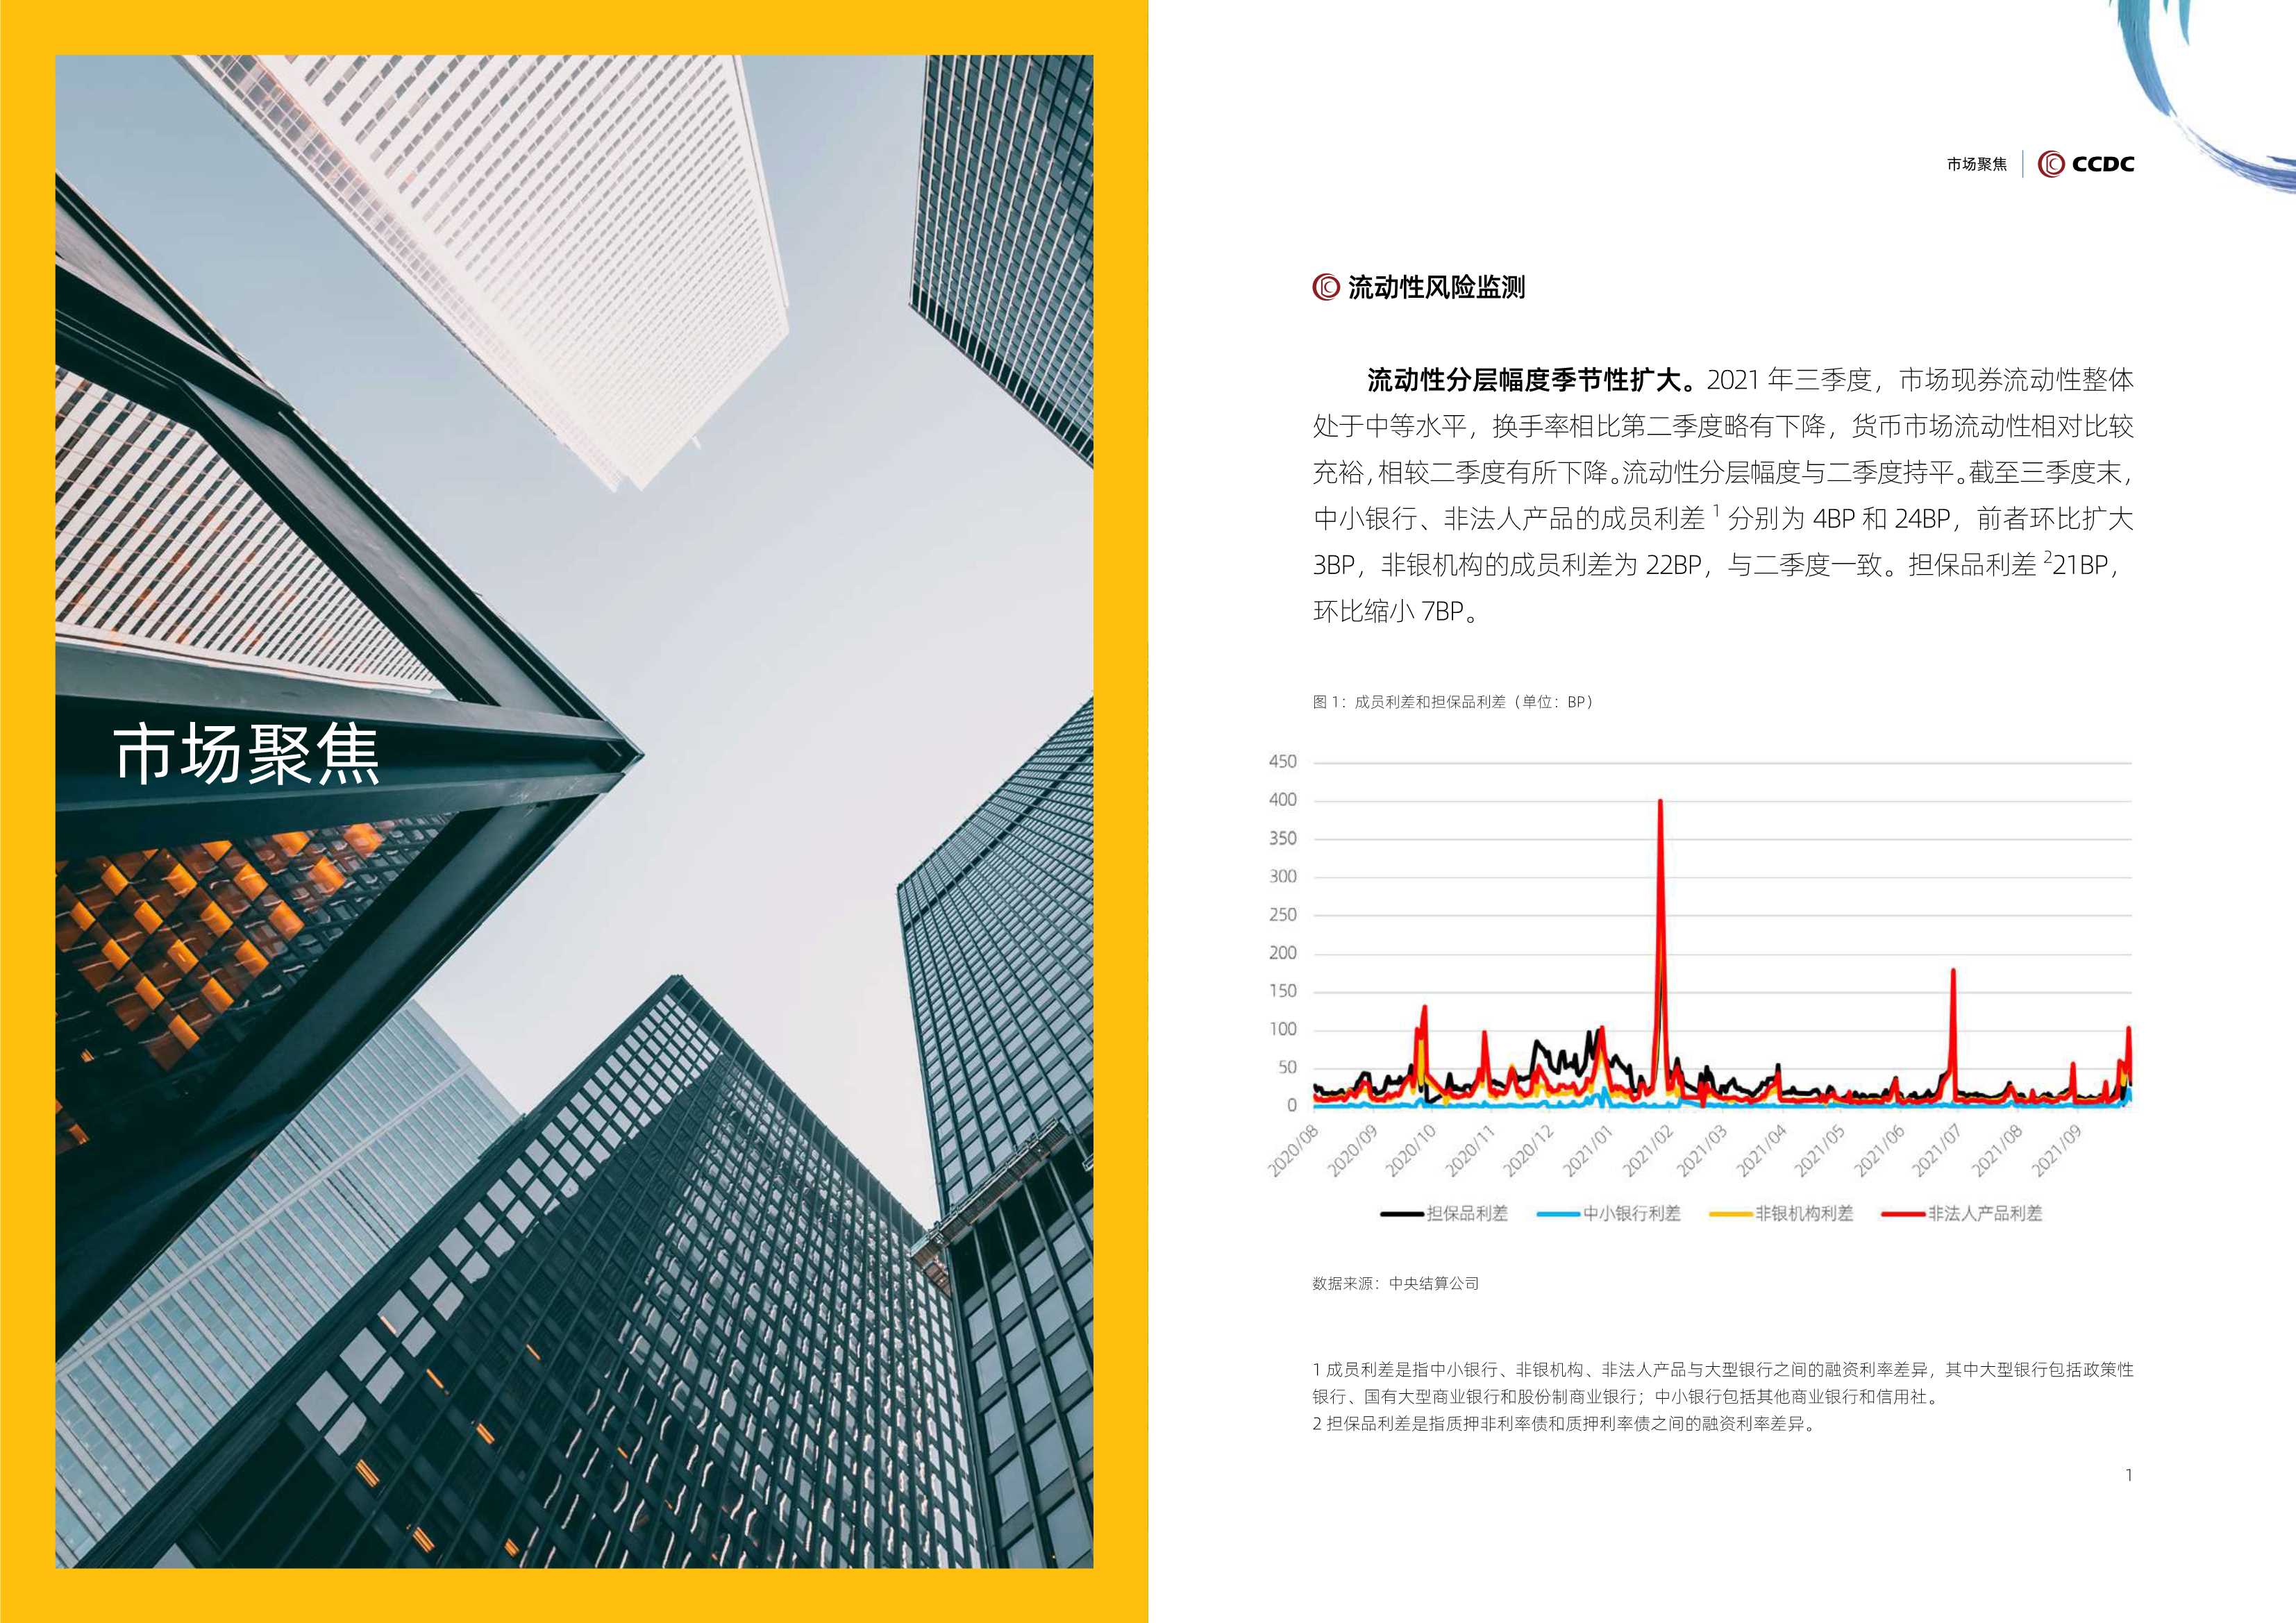 中国债券信息网-2021年第三季度中债担保品管理业务数据报告-2021.12-11页